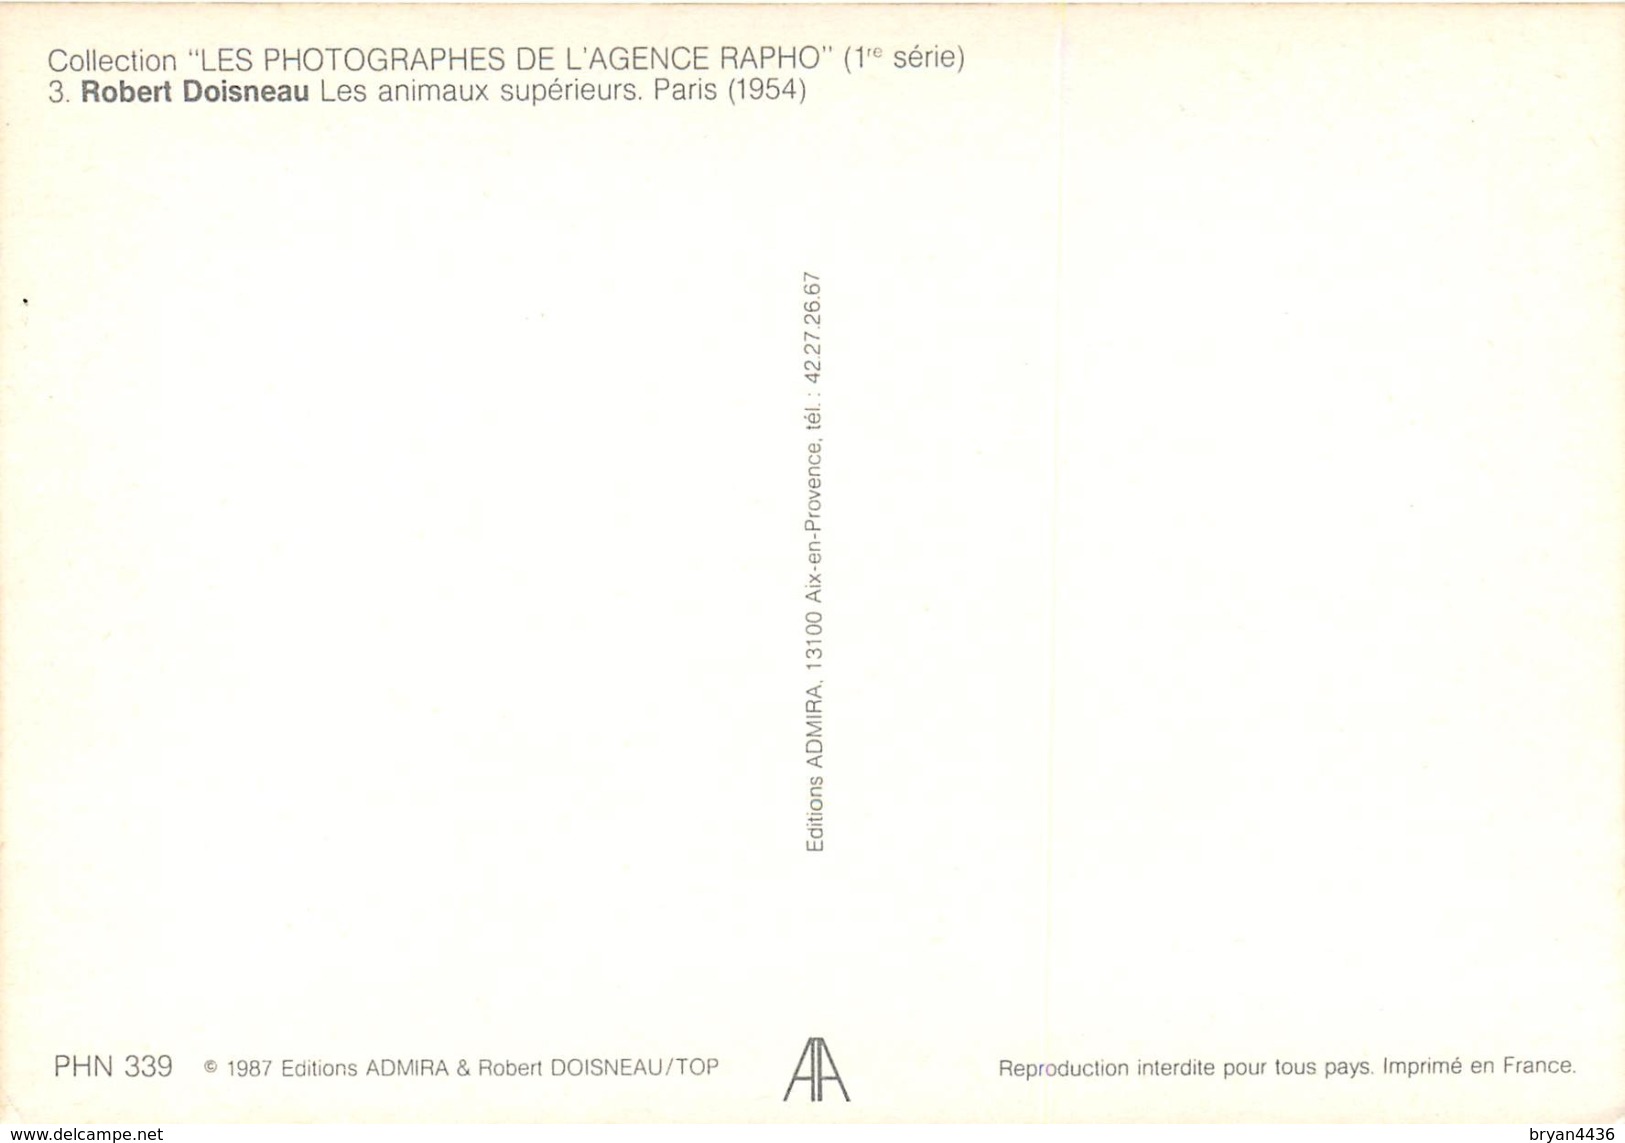 ROBERT DOISNEAU -  PHOTOGRAPHE - LES ANIMAUX SUPERIEURS - PARIS - 1954  - RARE EDITION ARTISTIQUE ADMIRA- - Doisneau